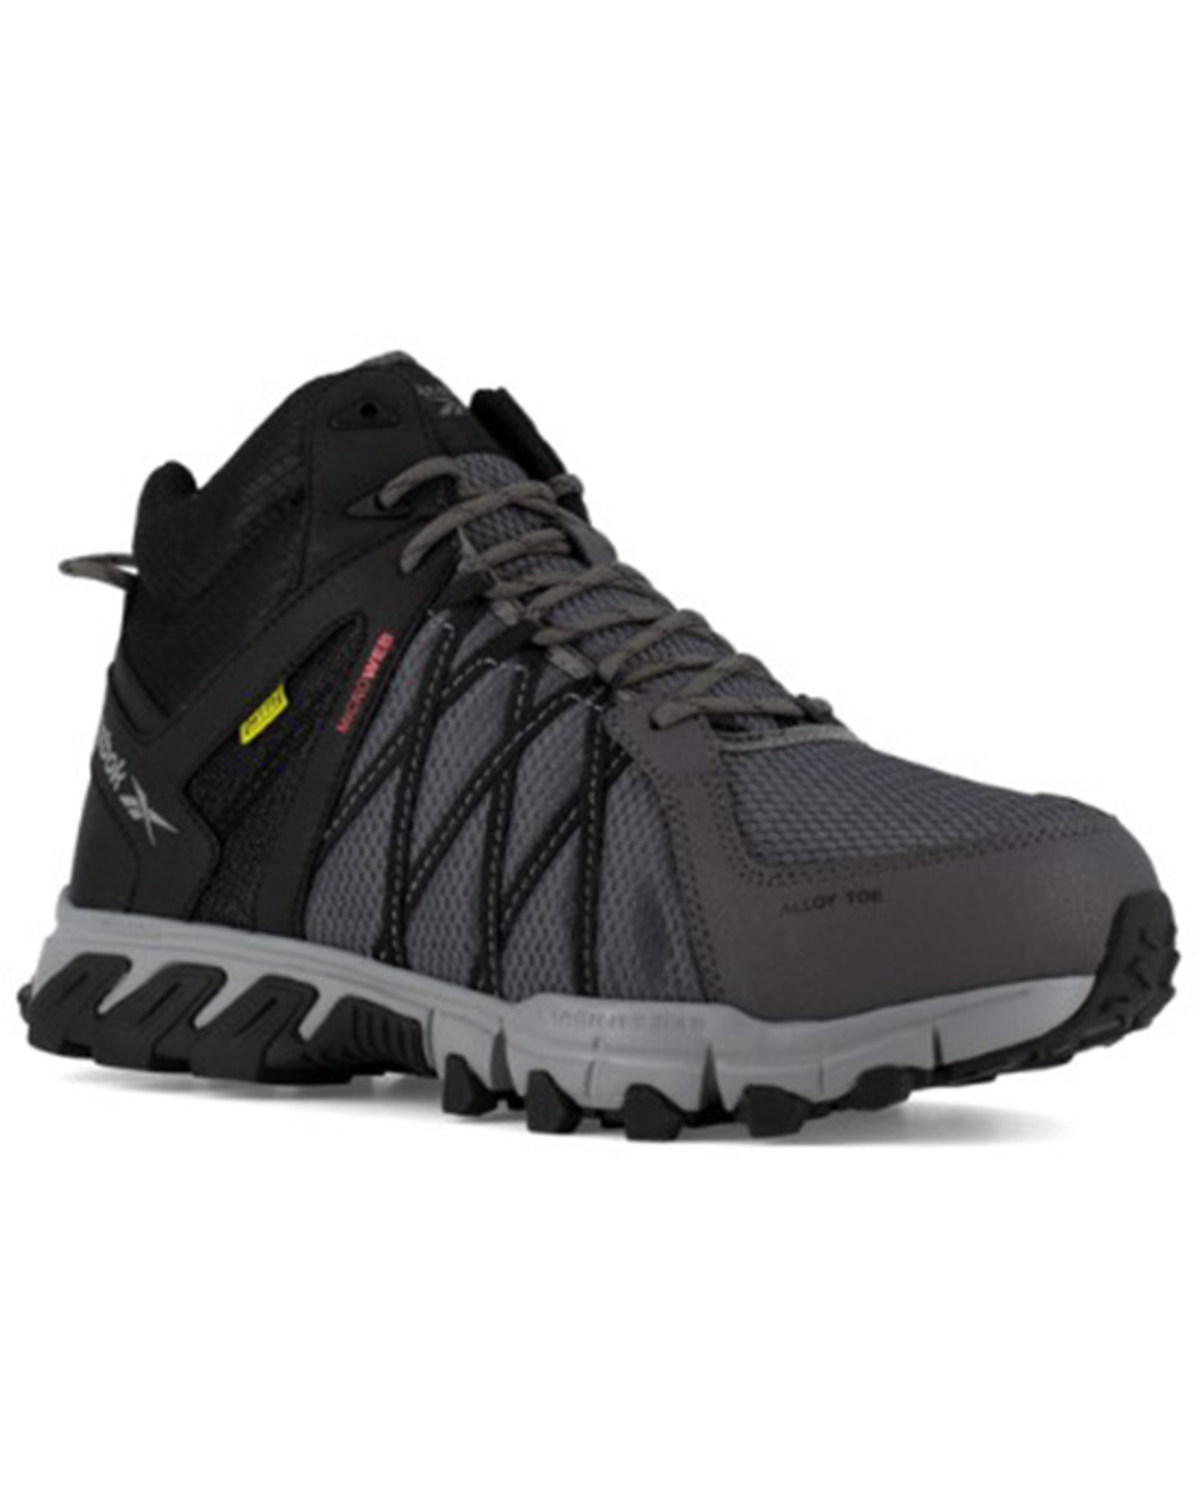 Reebok Women's Trailgrip Hiker Work Shoes - Alloy Toe